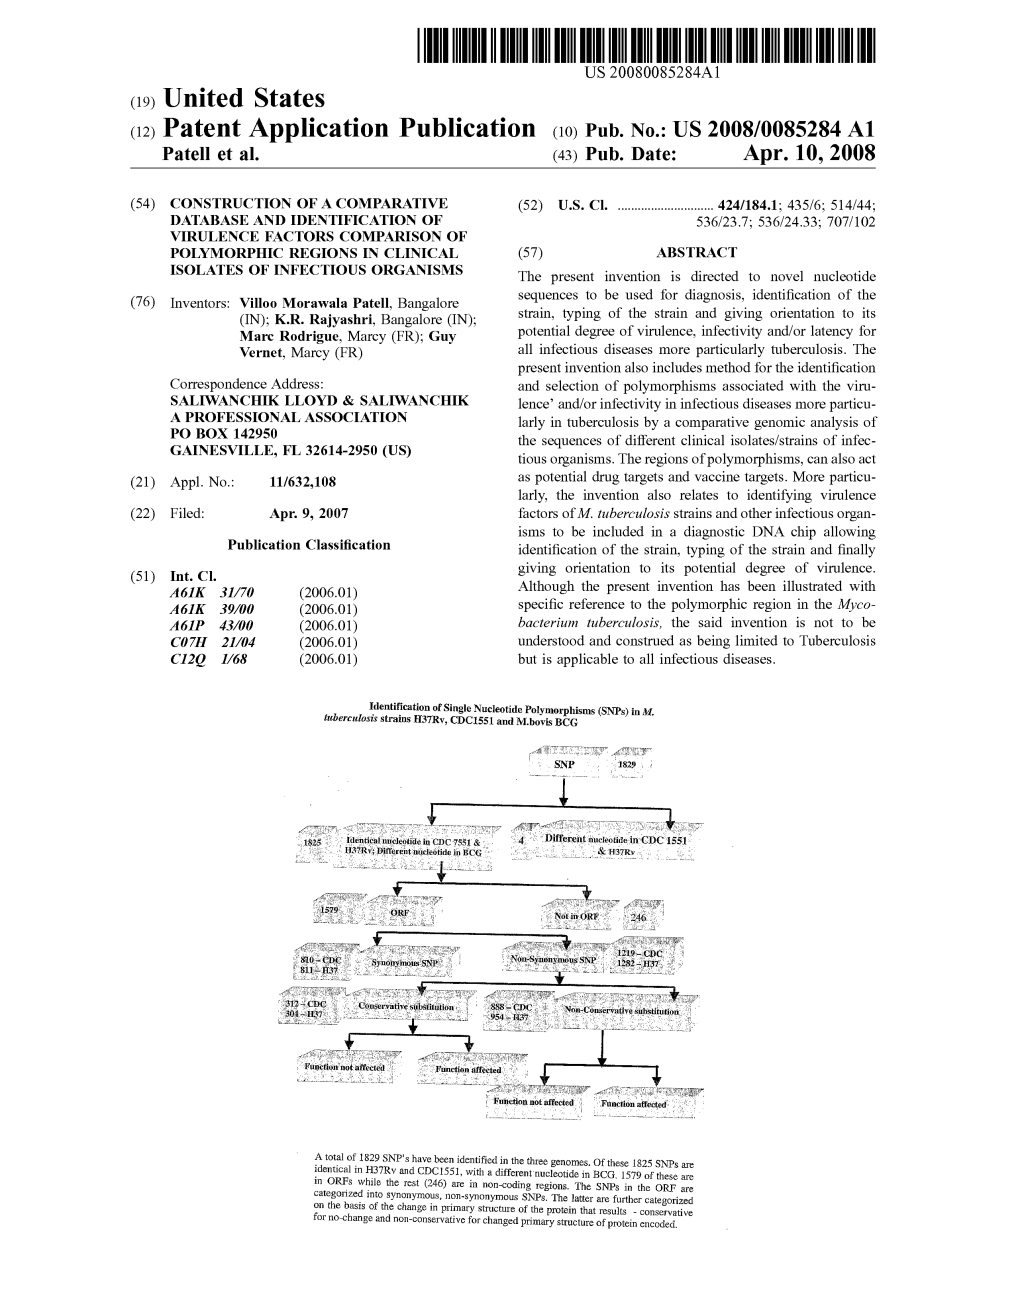 (12) Patent Application Publication (10) Pub. No.: US 2008/0085284 A1 Patell Et Al